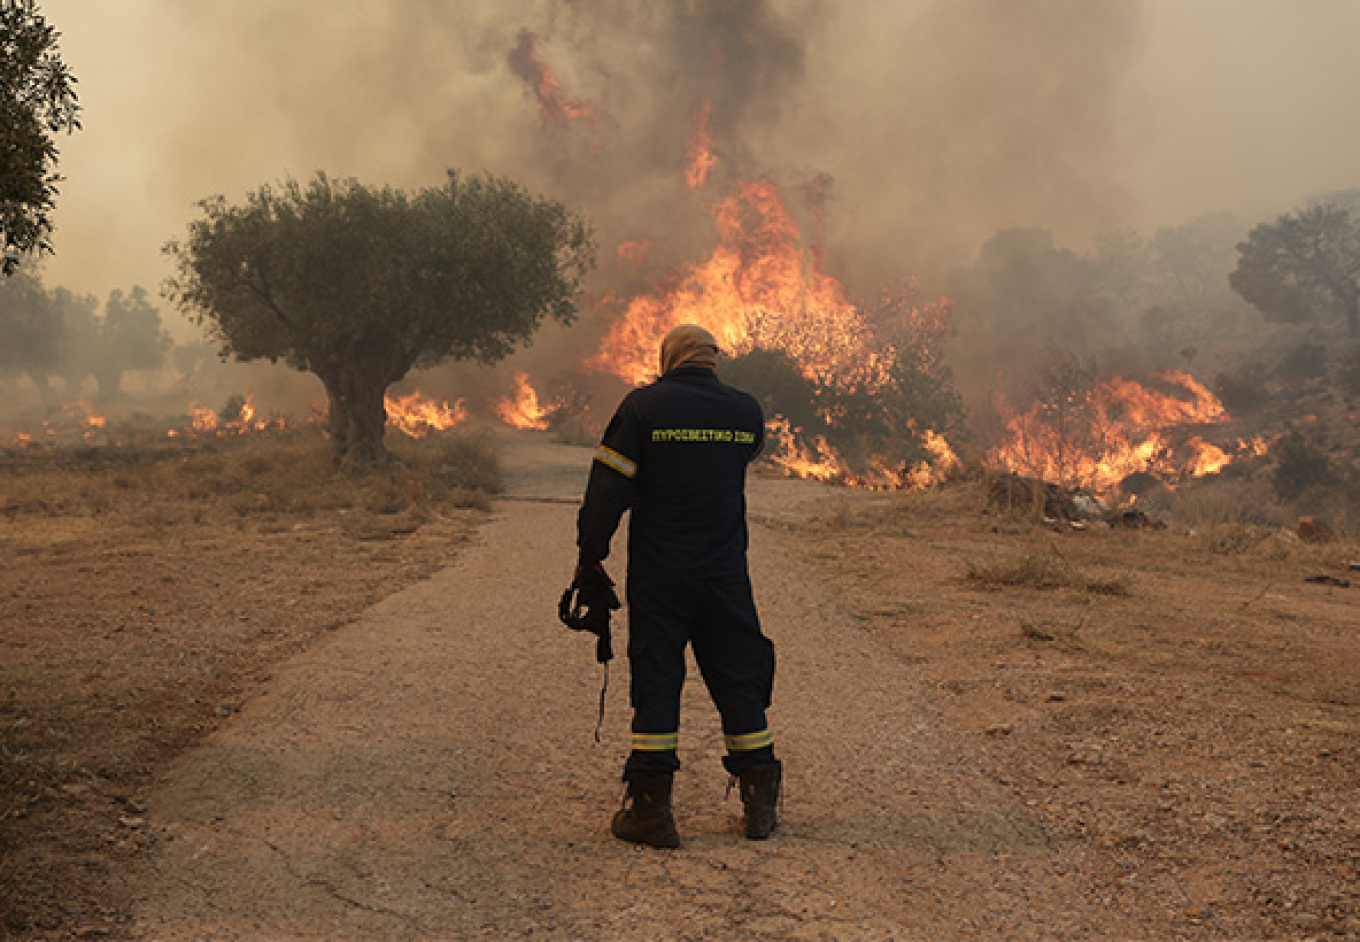 Πυρκαγιά σε αγροτοδασική έκταση στην Αγία Τριάδα Βοιωτίας - Σηκώθηκαν και εναέρια μέσα